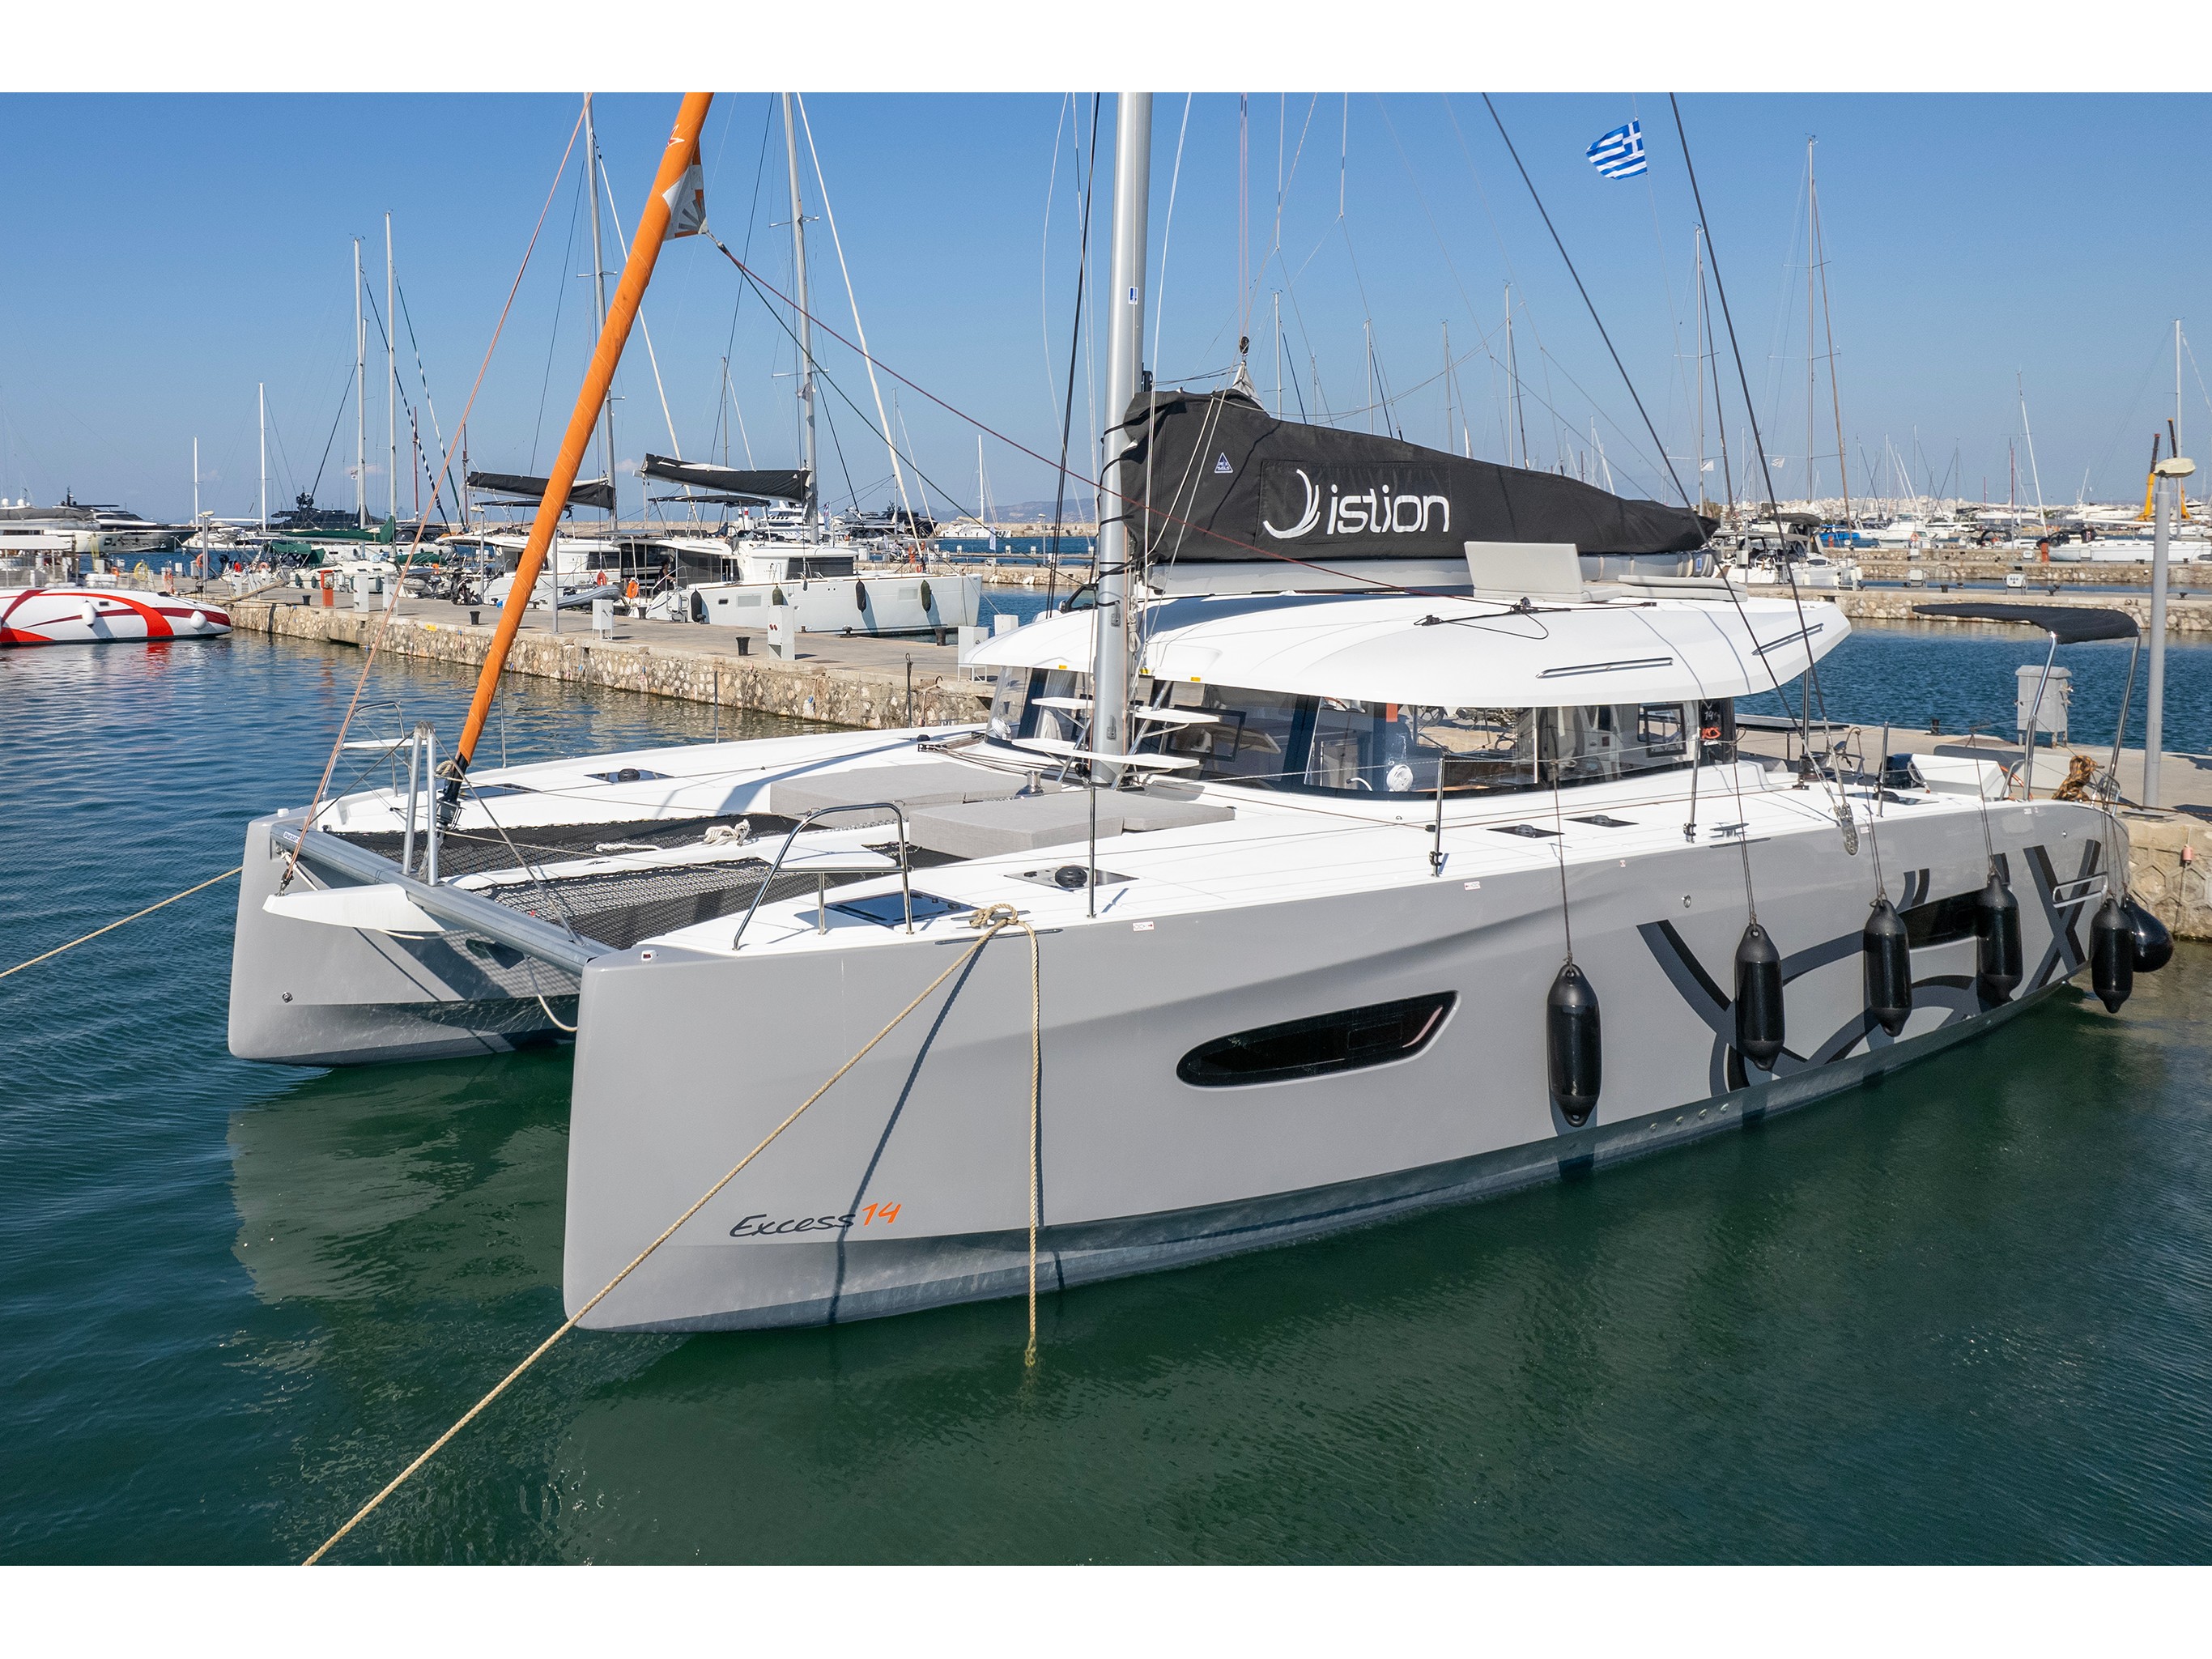 Yacht charter Excess 14 A/C & GEN & WM - Greece, Ionian Islands, Lefkada